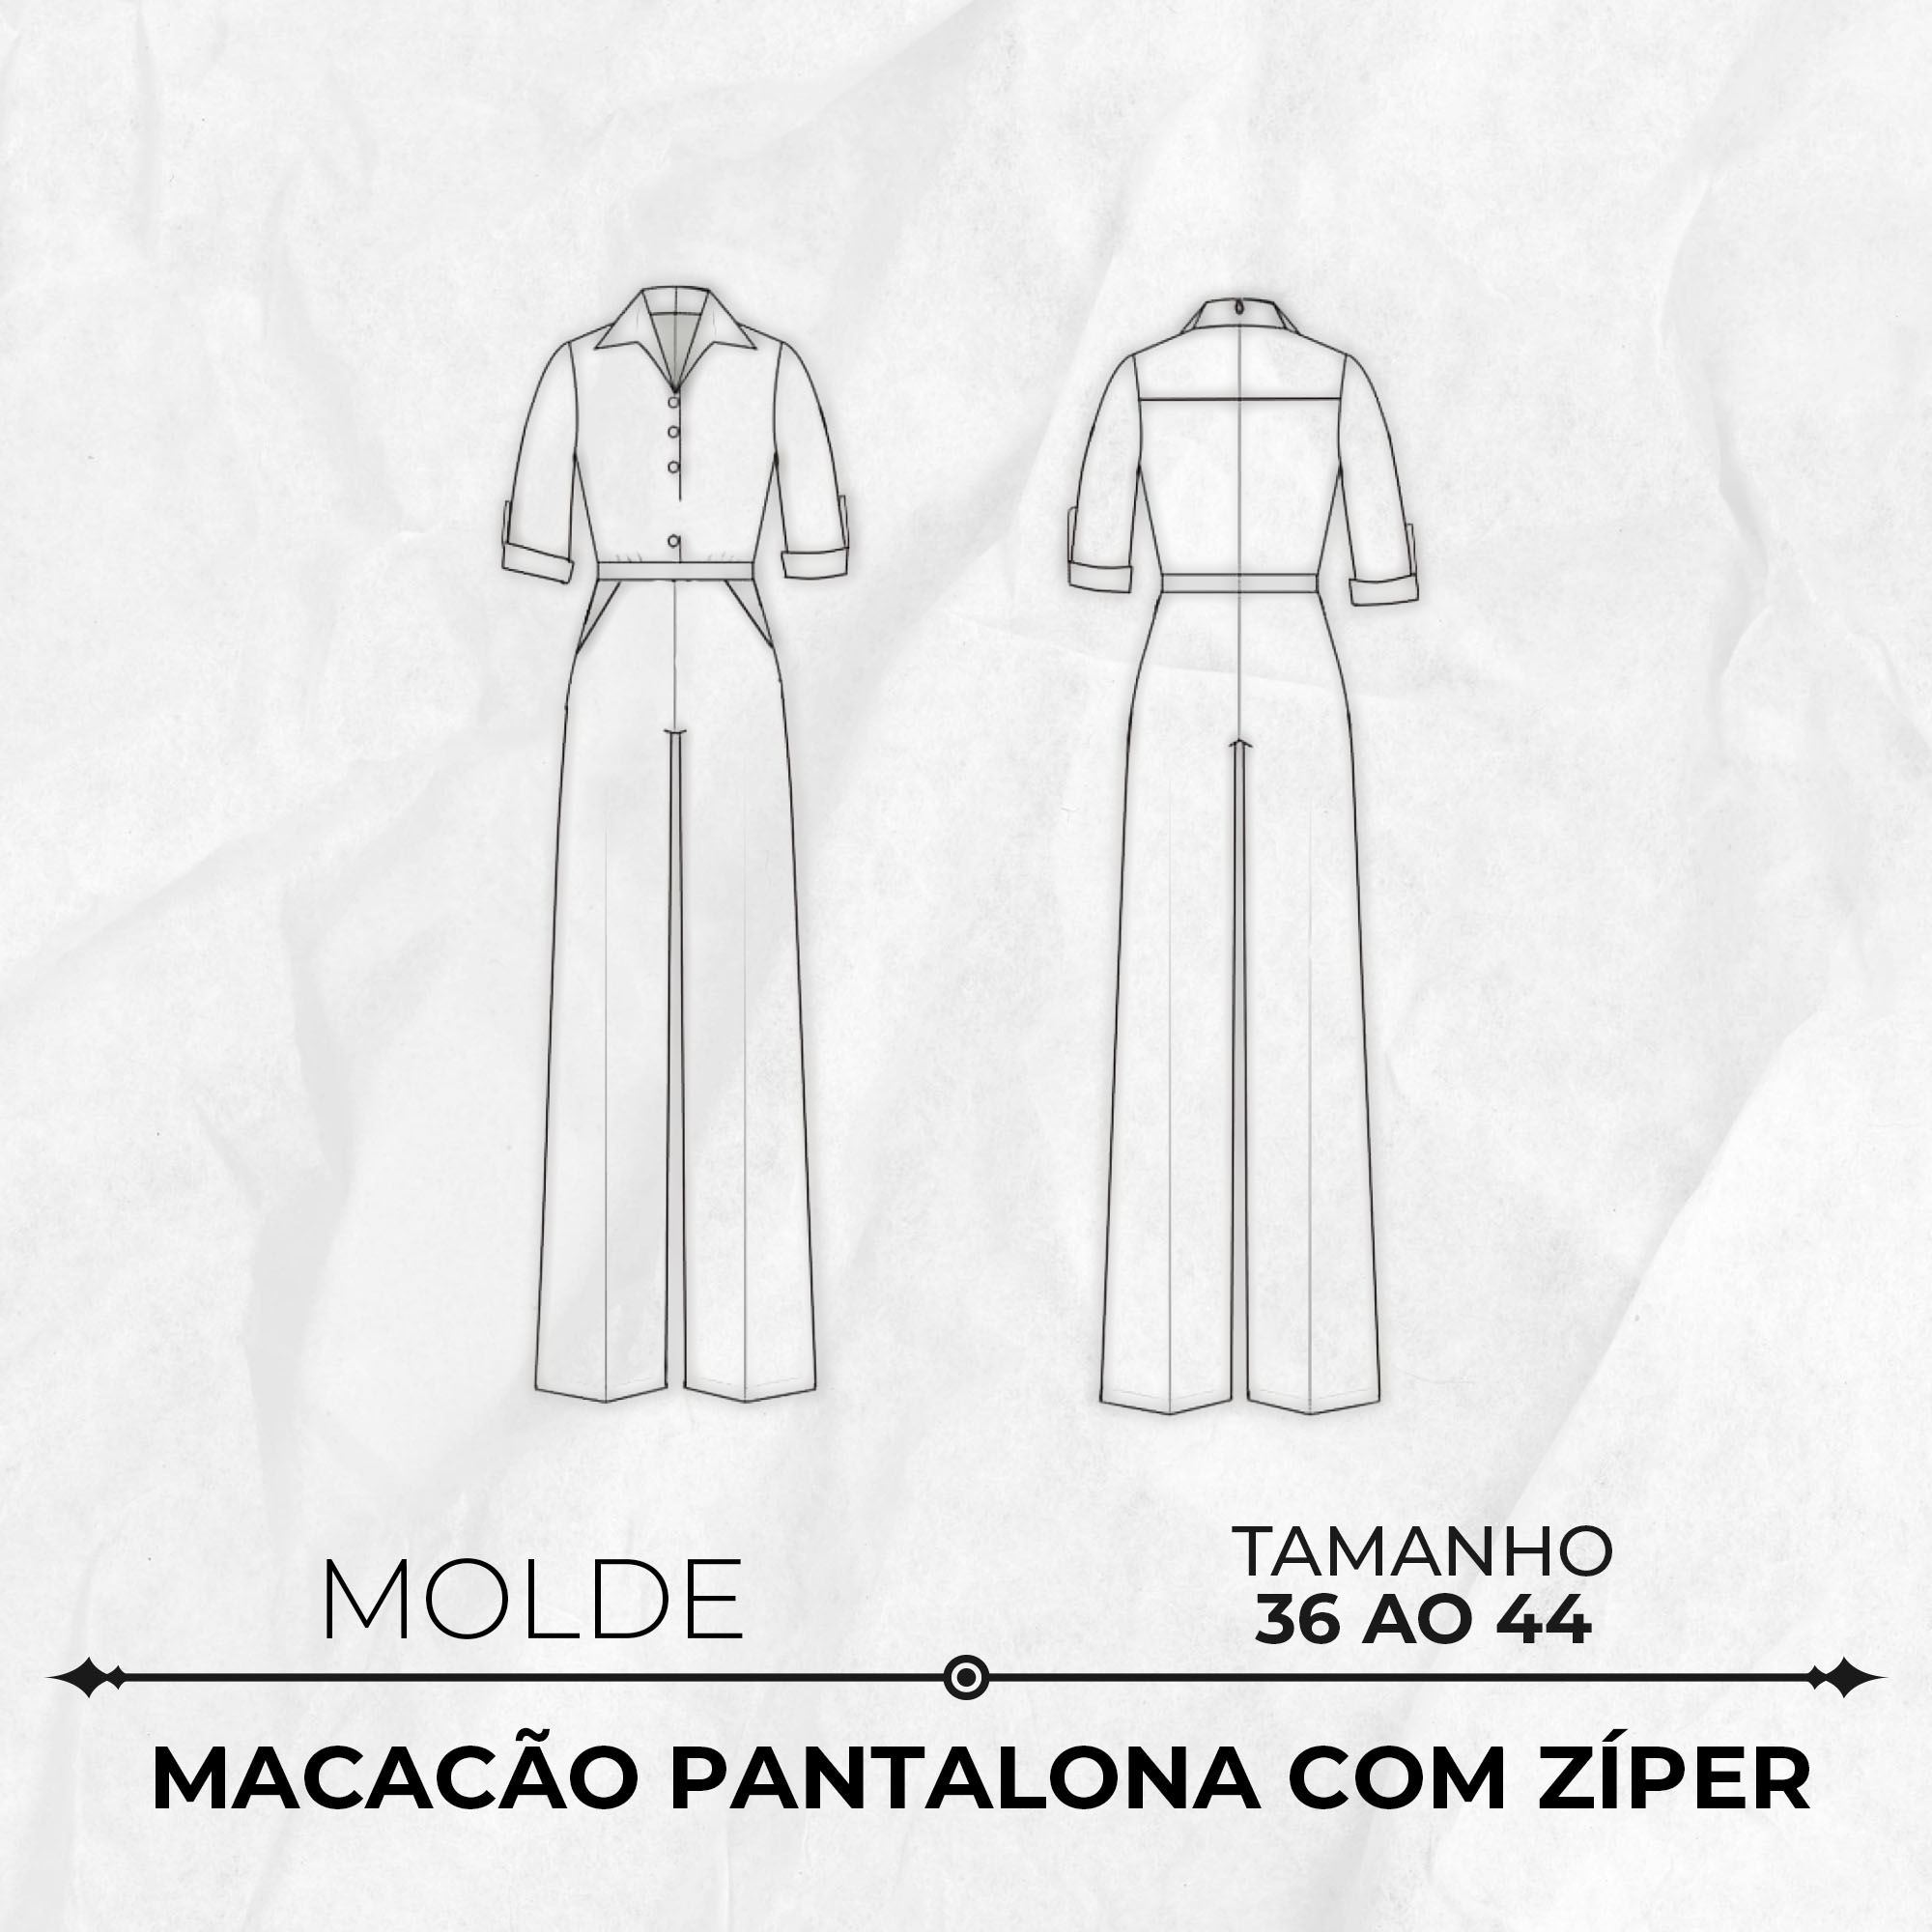 Molde Macacão Pantalona com Zíper tamanho 36 ao 44 by Wania Machado